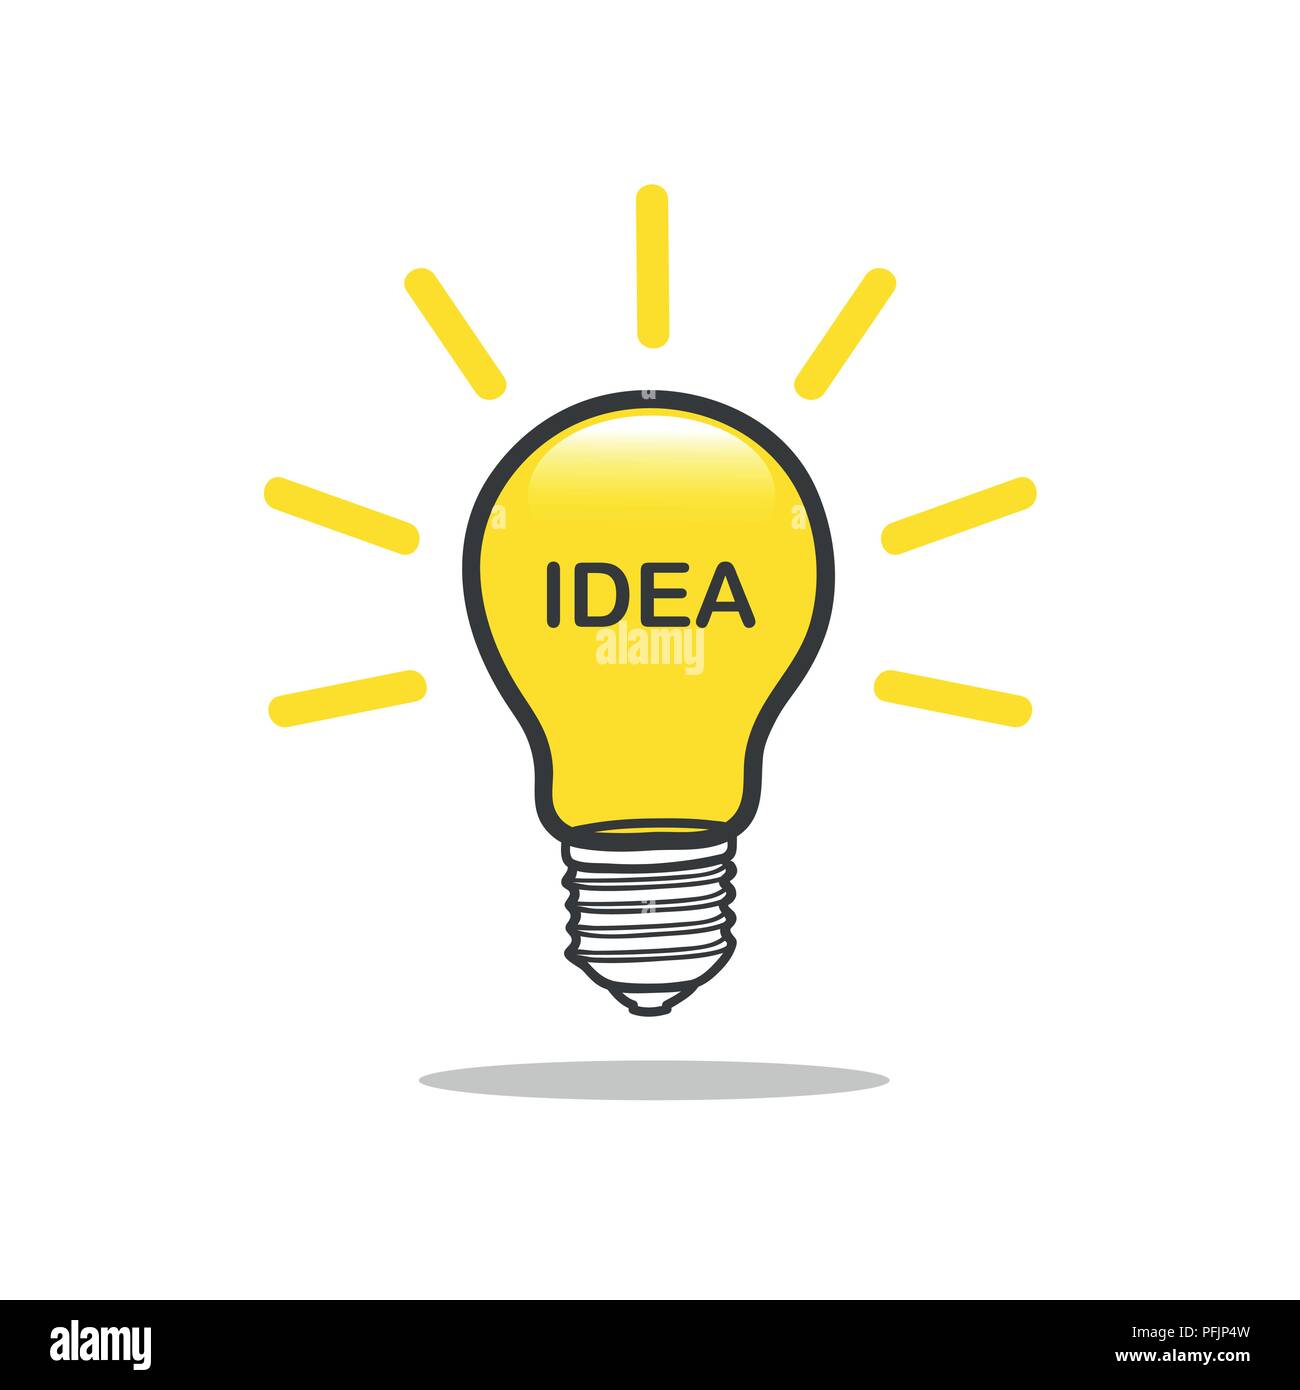 main idea light bulb